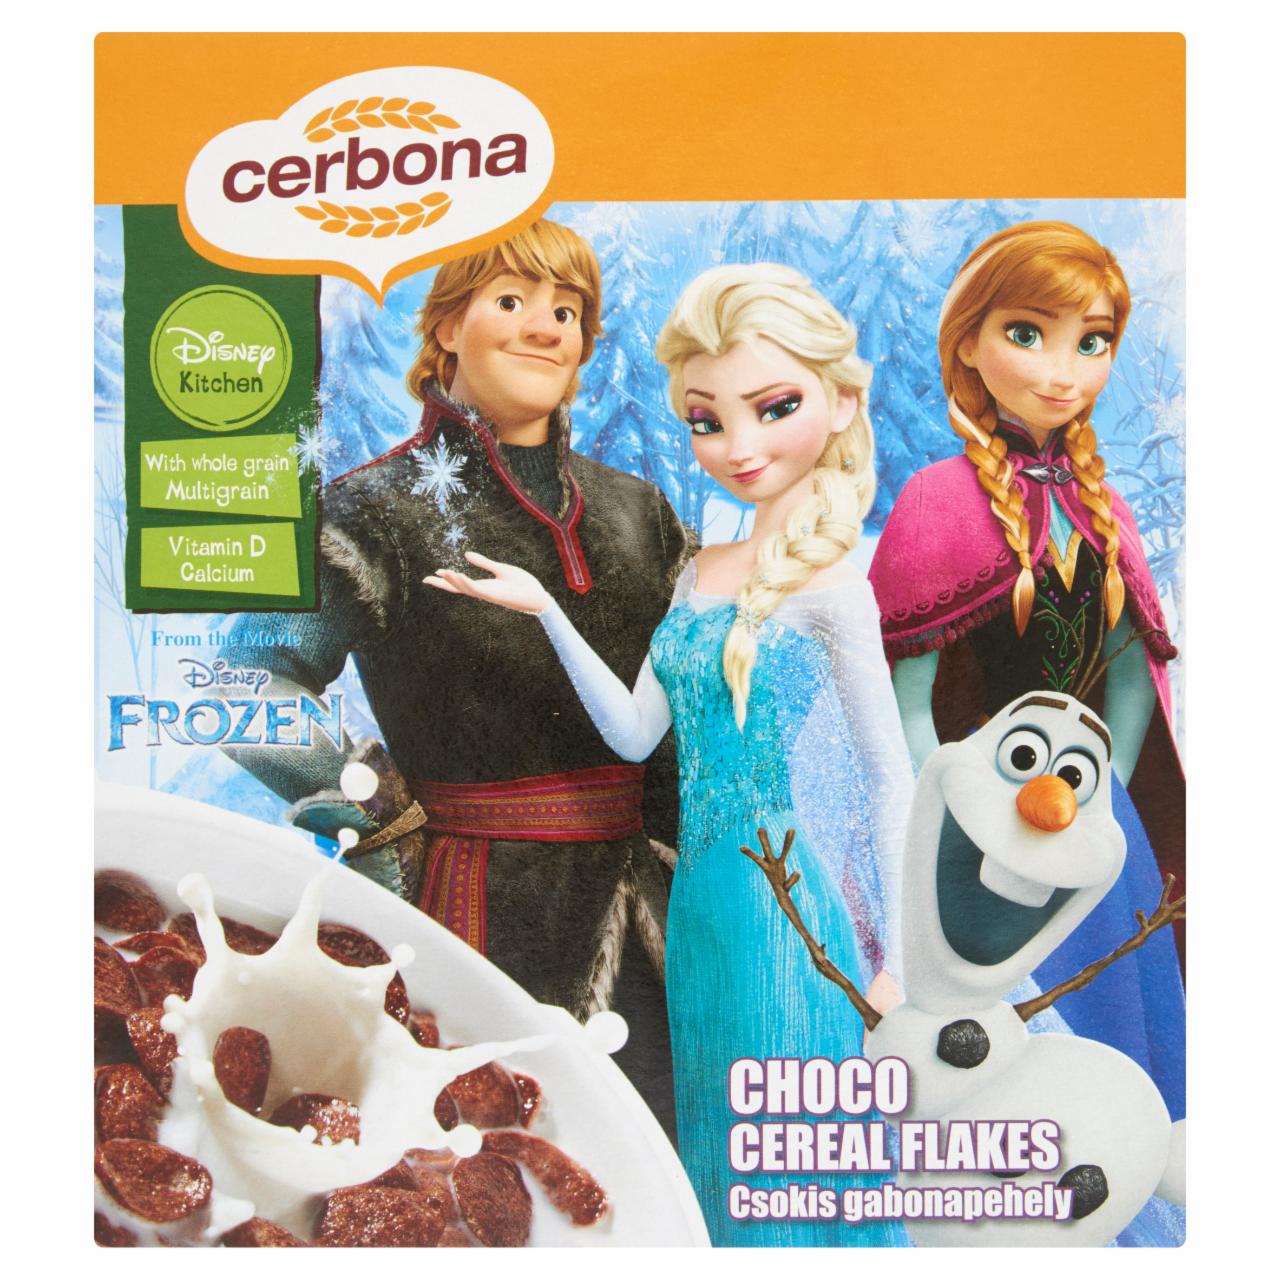 Képek - Cerbona Disney Frozen csokis gabonapehely 225 g